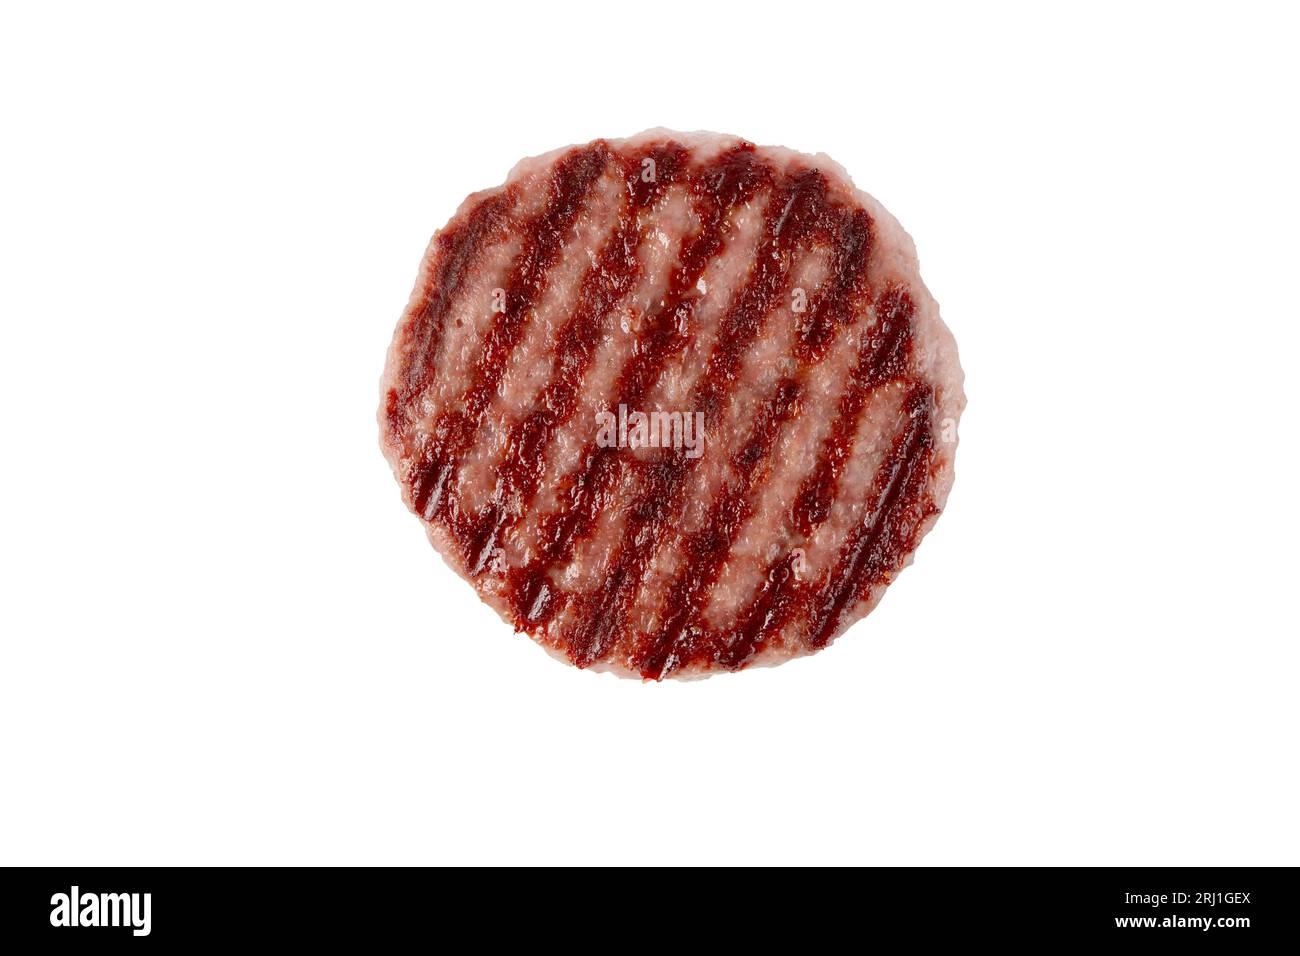 Hackfleisch-Patty oder Burger mit geschwärzten Grillspuren von oben isoliert auf weiß. Hamburger Zutat. Stockfoto